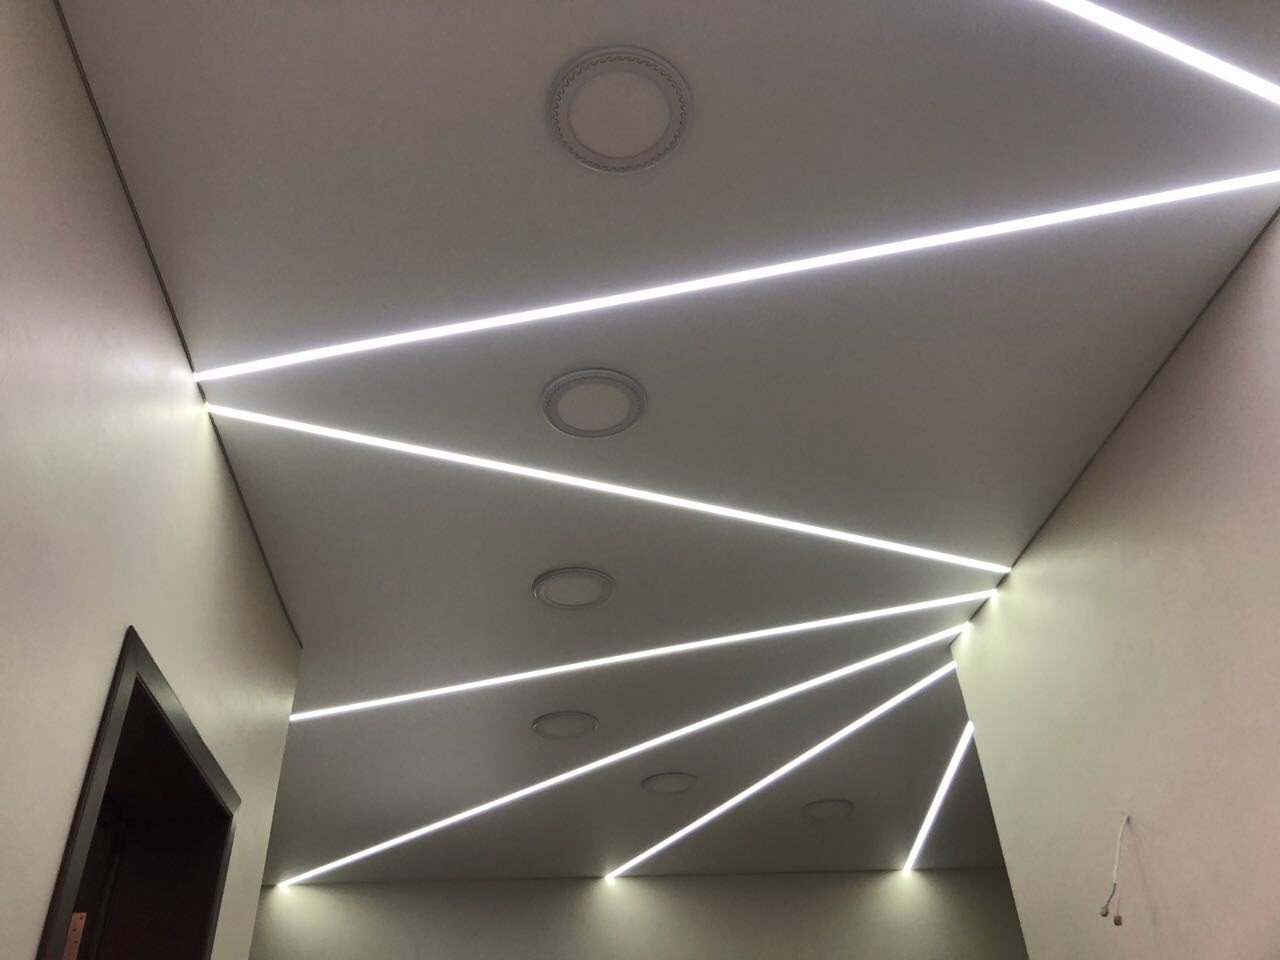 Свет от световых линий. Потолок с подсветкой. Натяжной потолок со светодиодной подсветкой. Световые полосы на потолке. Диодная подсветка потолка.